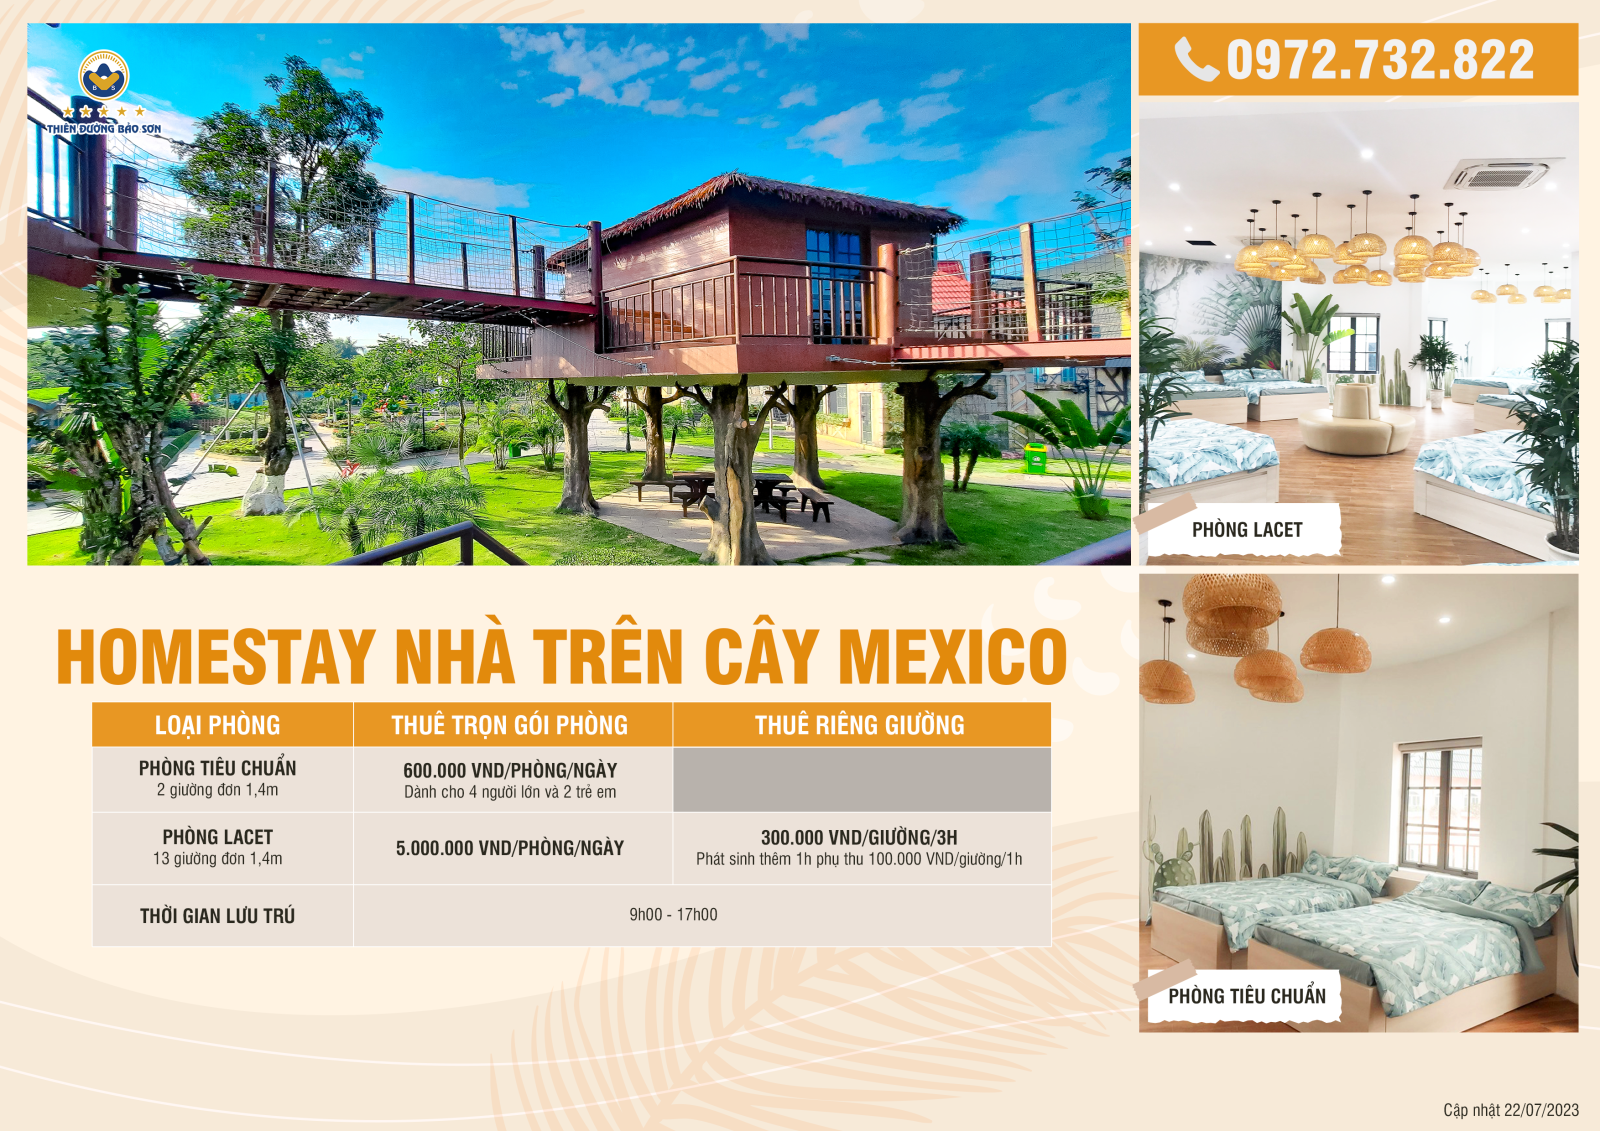 Bảng giá Homestay Nhà trên cây Mexico 